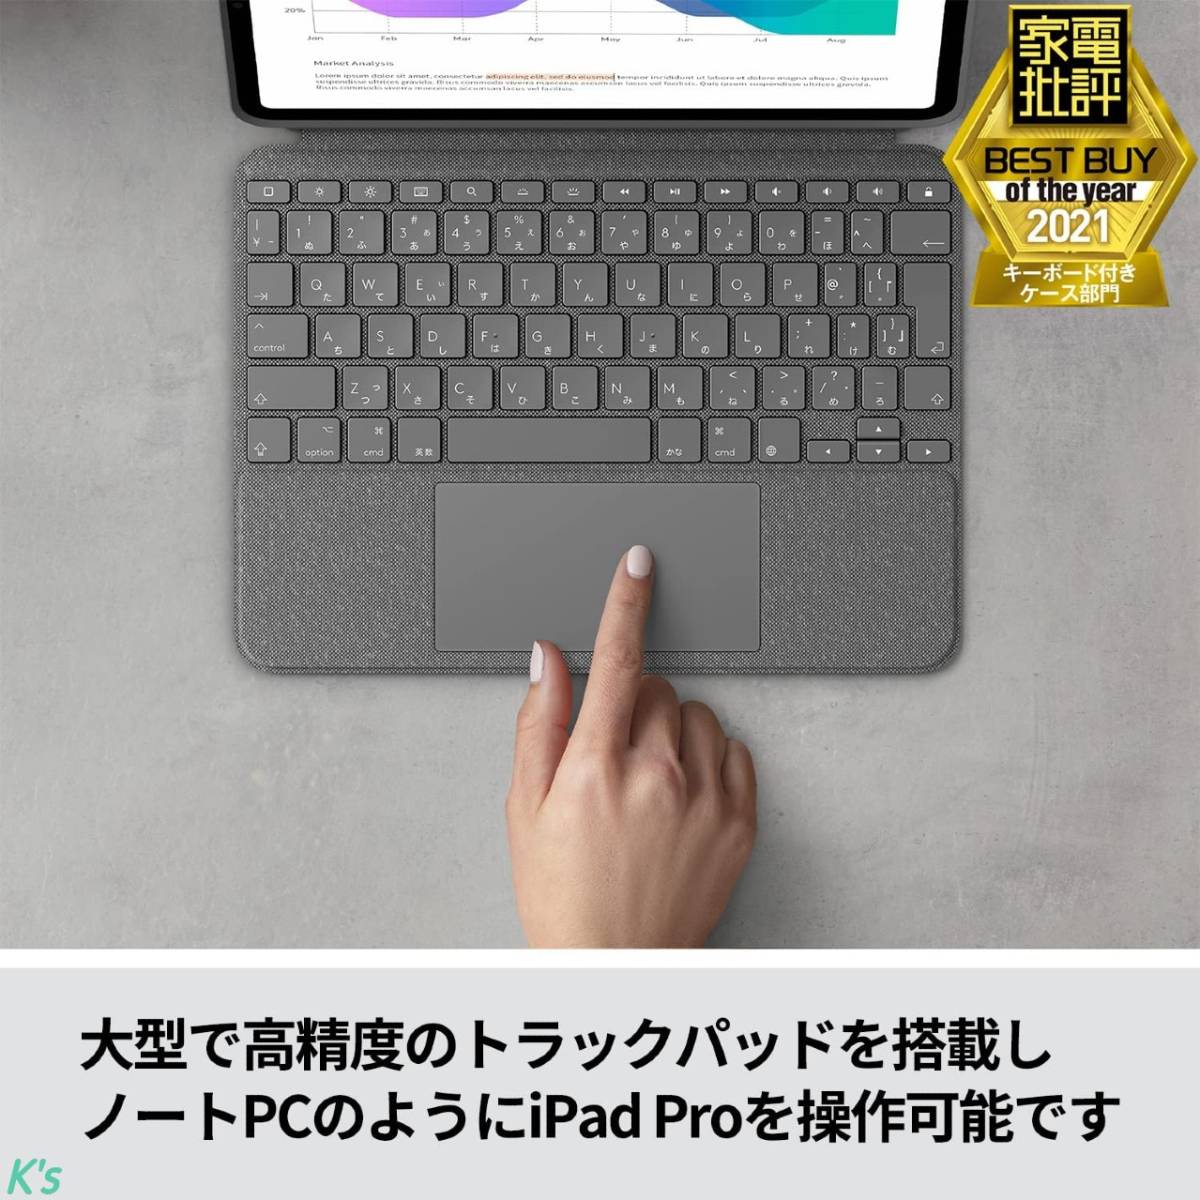 トラックパッド付き 日本語キーボード スマートコネクタ iPad Pro 12.9